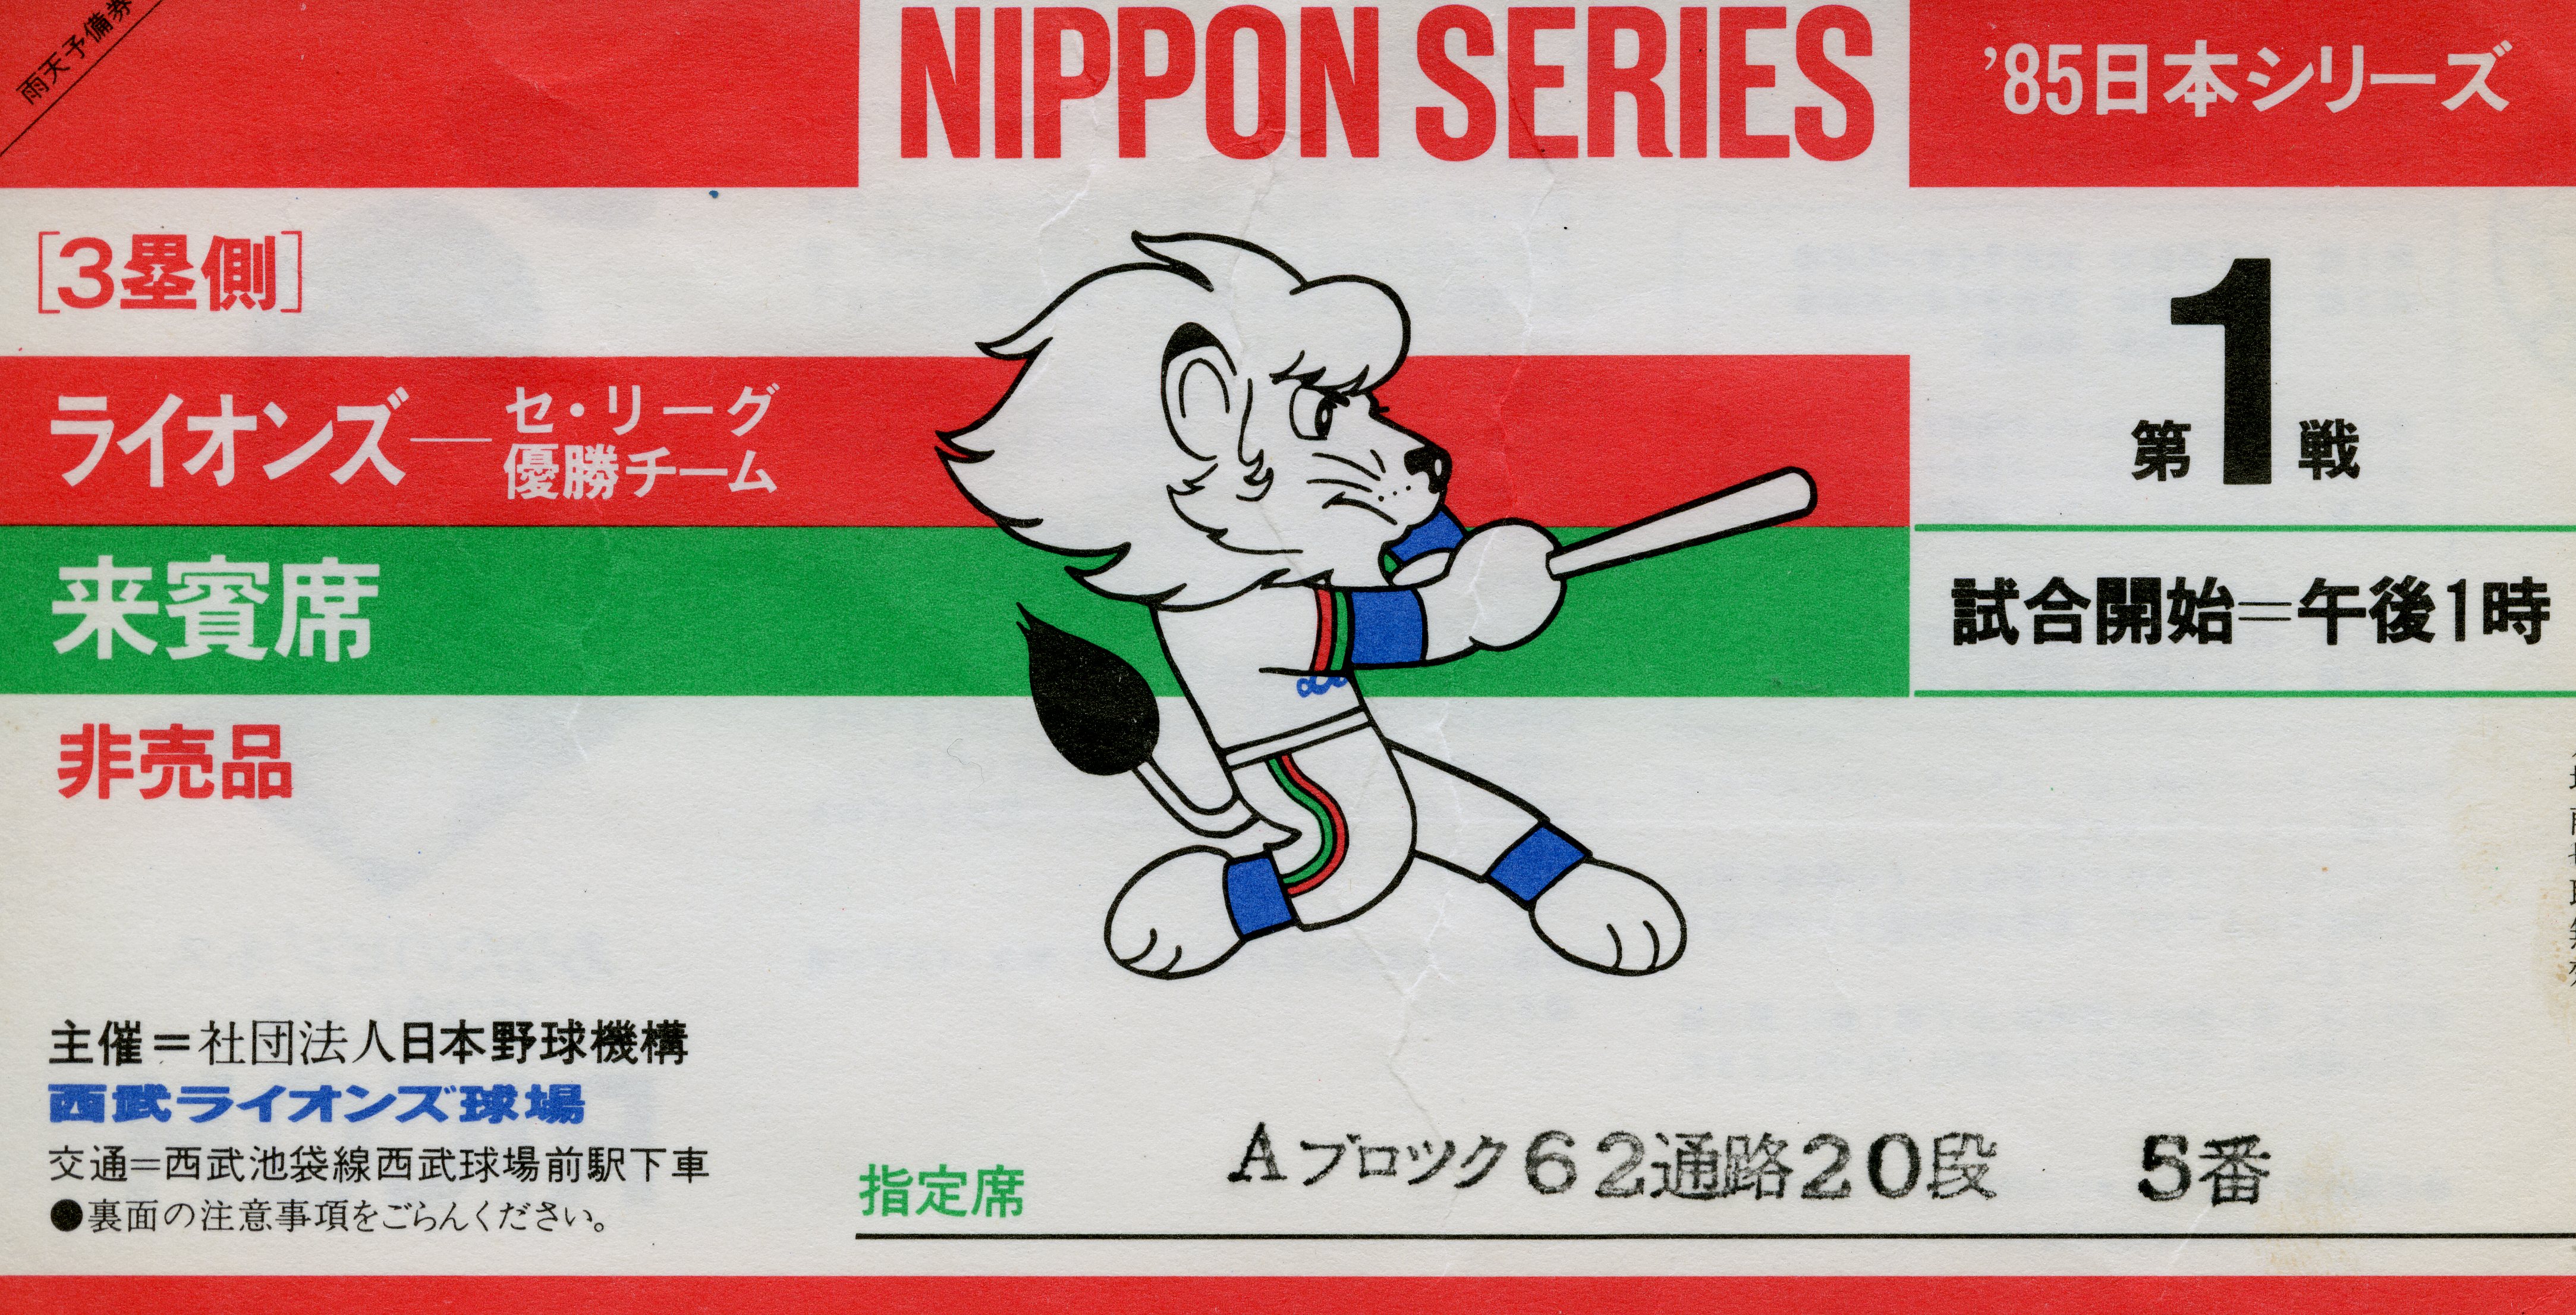 1985年 日本シリーズ 西武ライオンズ球場 – 野球カード 紙ものサイト b